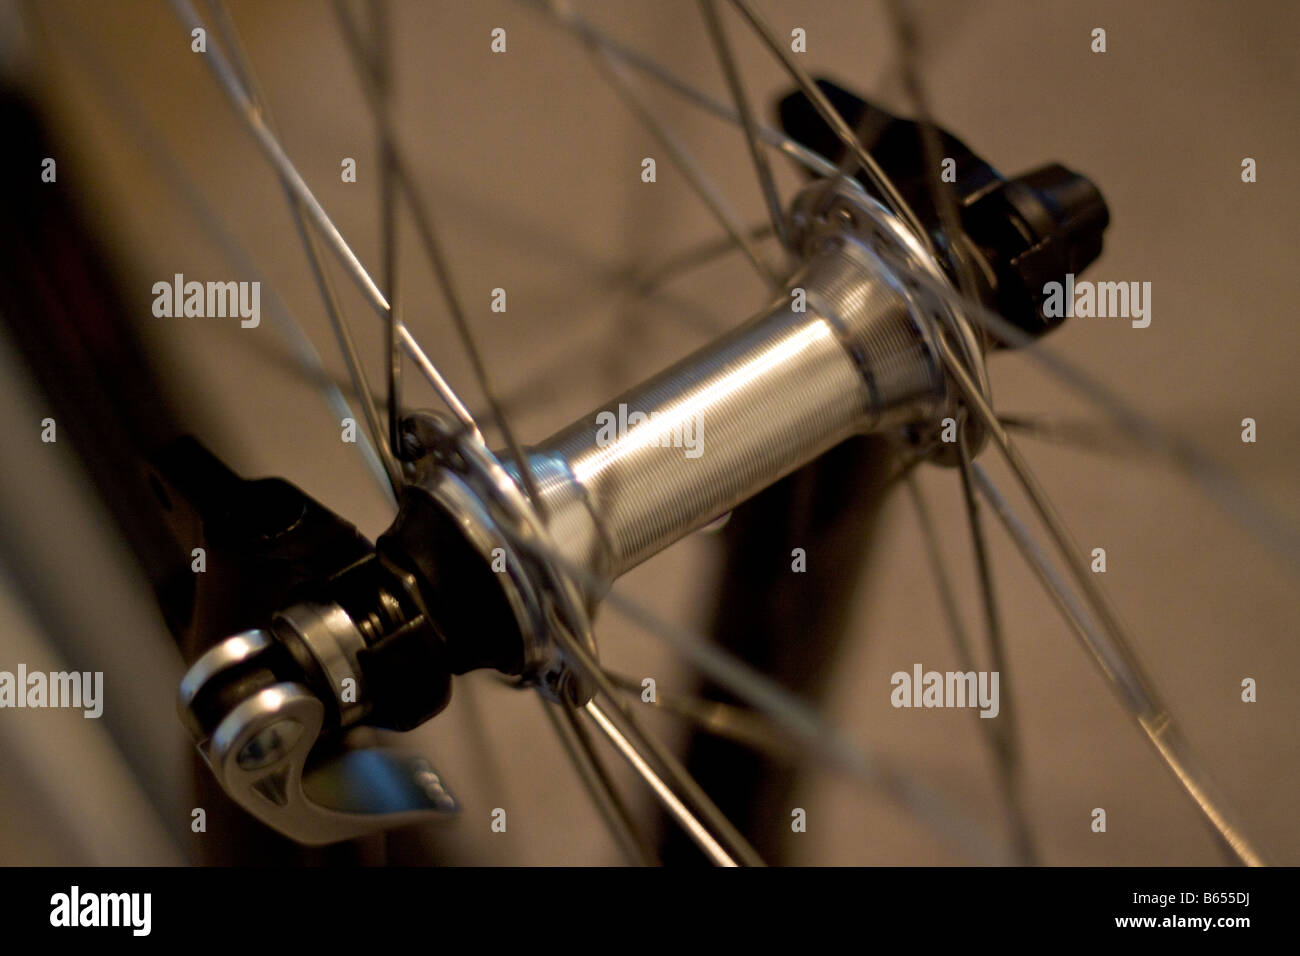 Ein Schnellspanner Vorderrad-Achse und Speichen mit dem Rennrad  Stockfotografie - Alamy